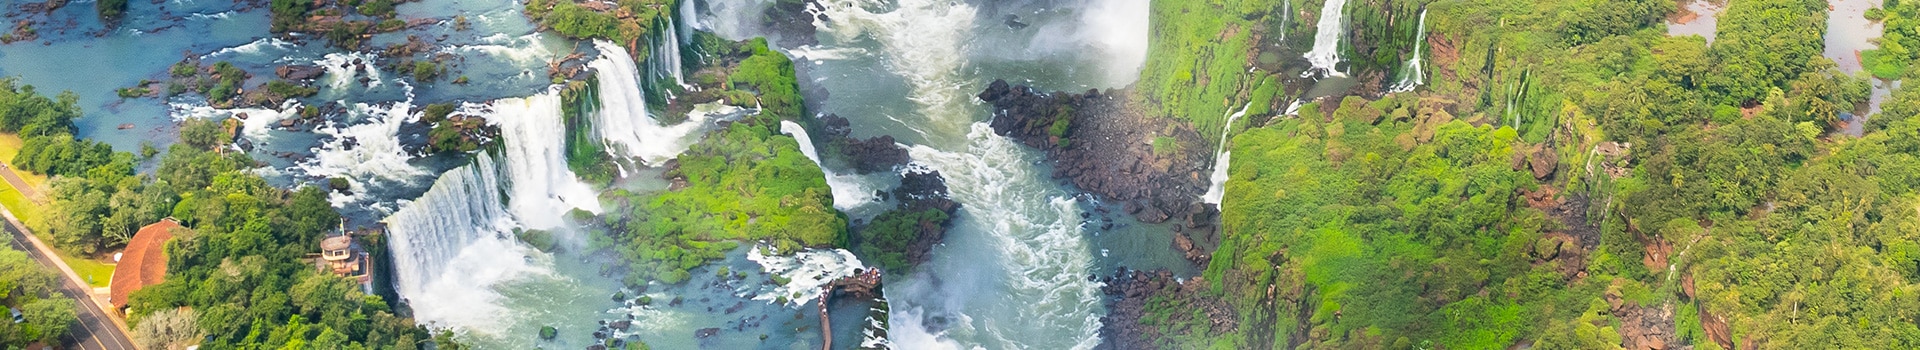 Bartolomeu lisandro -  rio de janeiro - Iguassu falls-cataratas